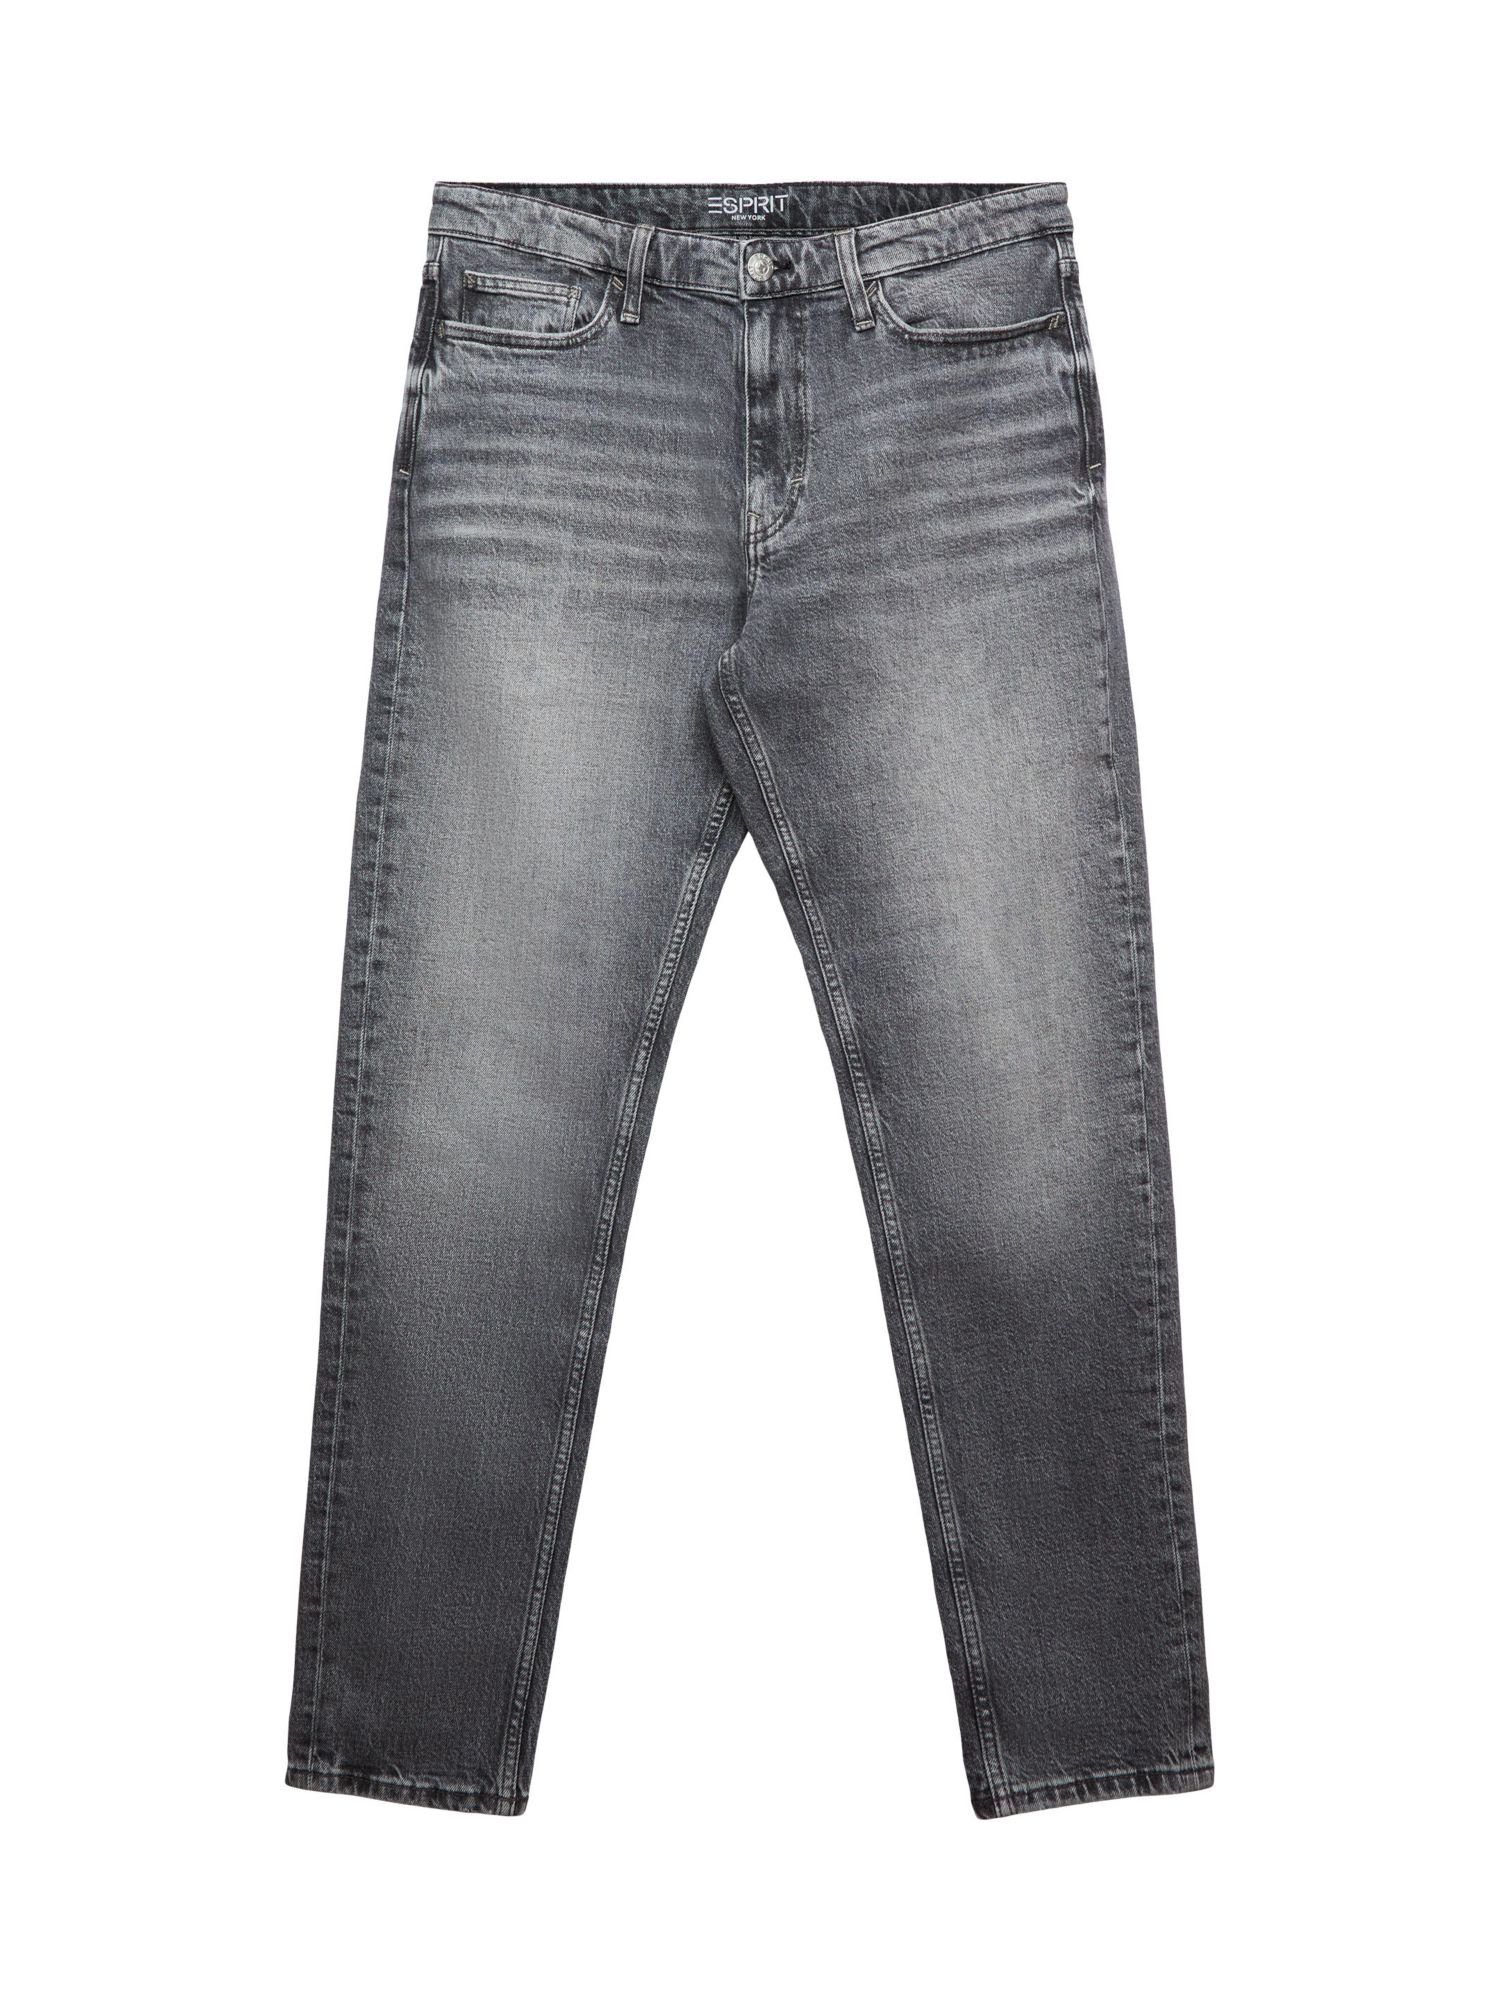 Esprit Tapered-fit-Jeans Gerade, konische Jeans mit mittelhohem Bund, Etwas  weiter am Oberschenkel, nach unten hin schmaler und dann gerade